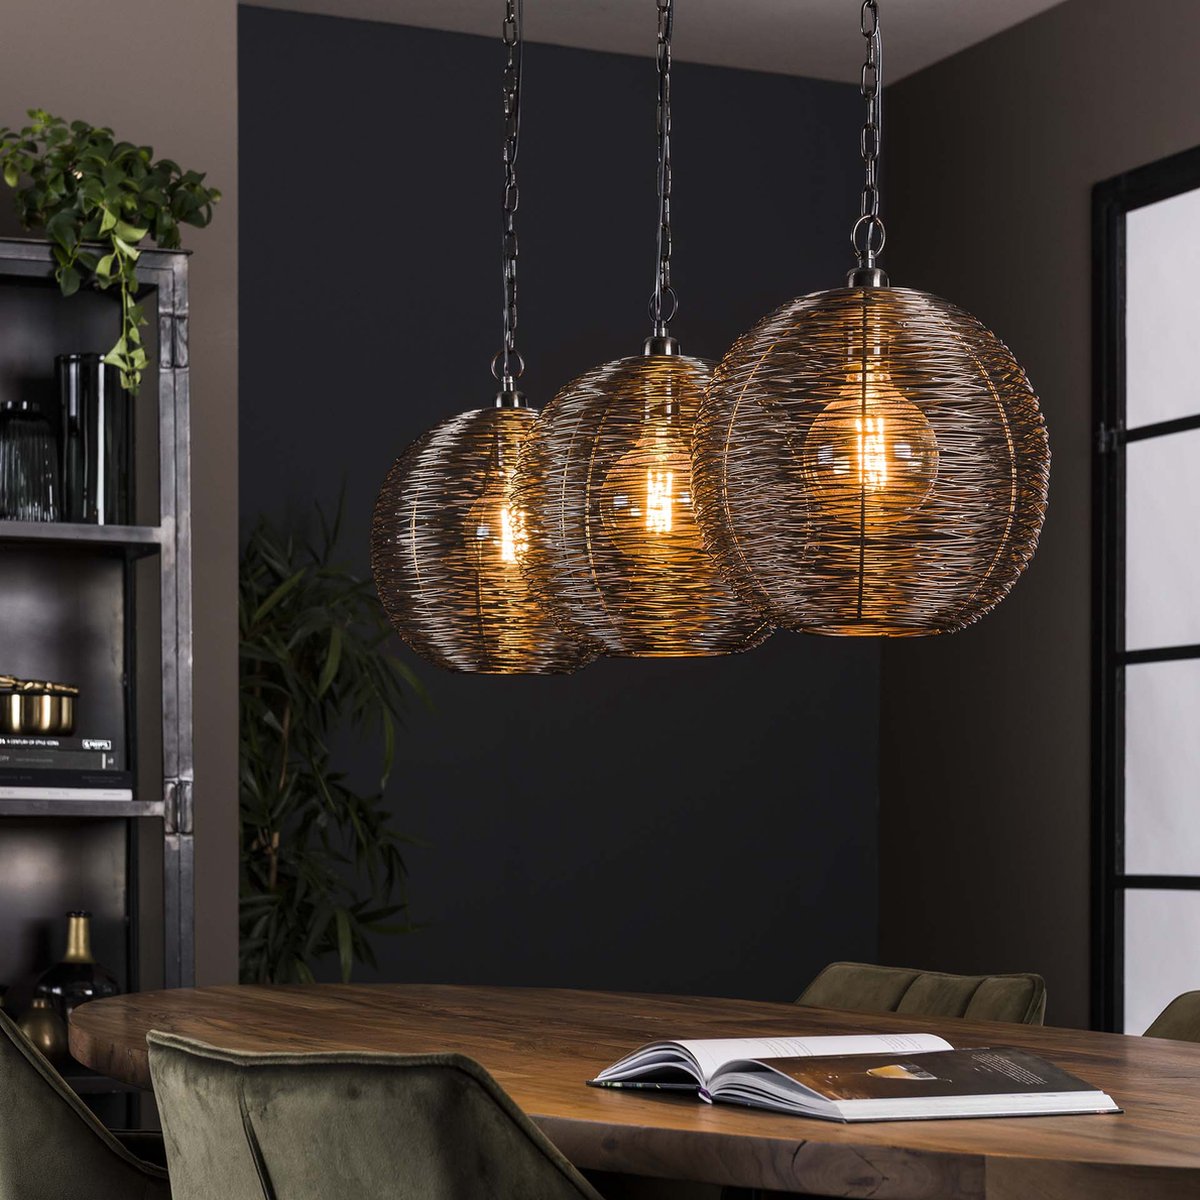 Open eettafellamp Reach | 3 lichts | zwart / bruin / brons | metaal | 98 cm breed | in hoogte verstelbaar tot 150 cm | eetkamer / eettafel lamp | modern / sfeervol design